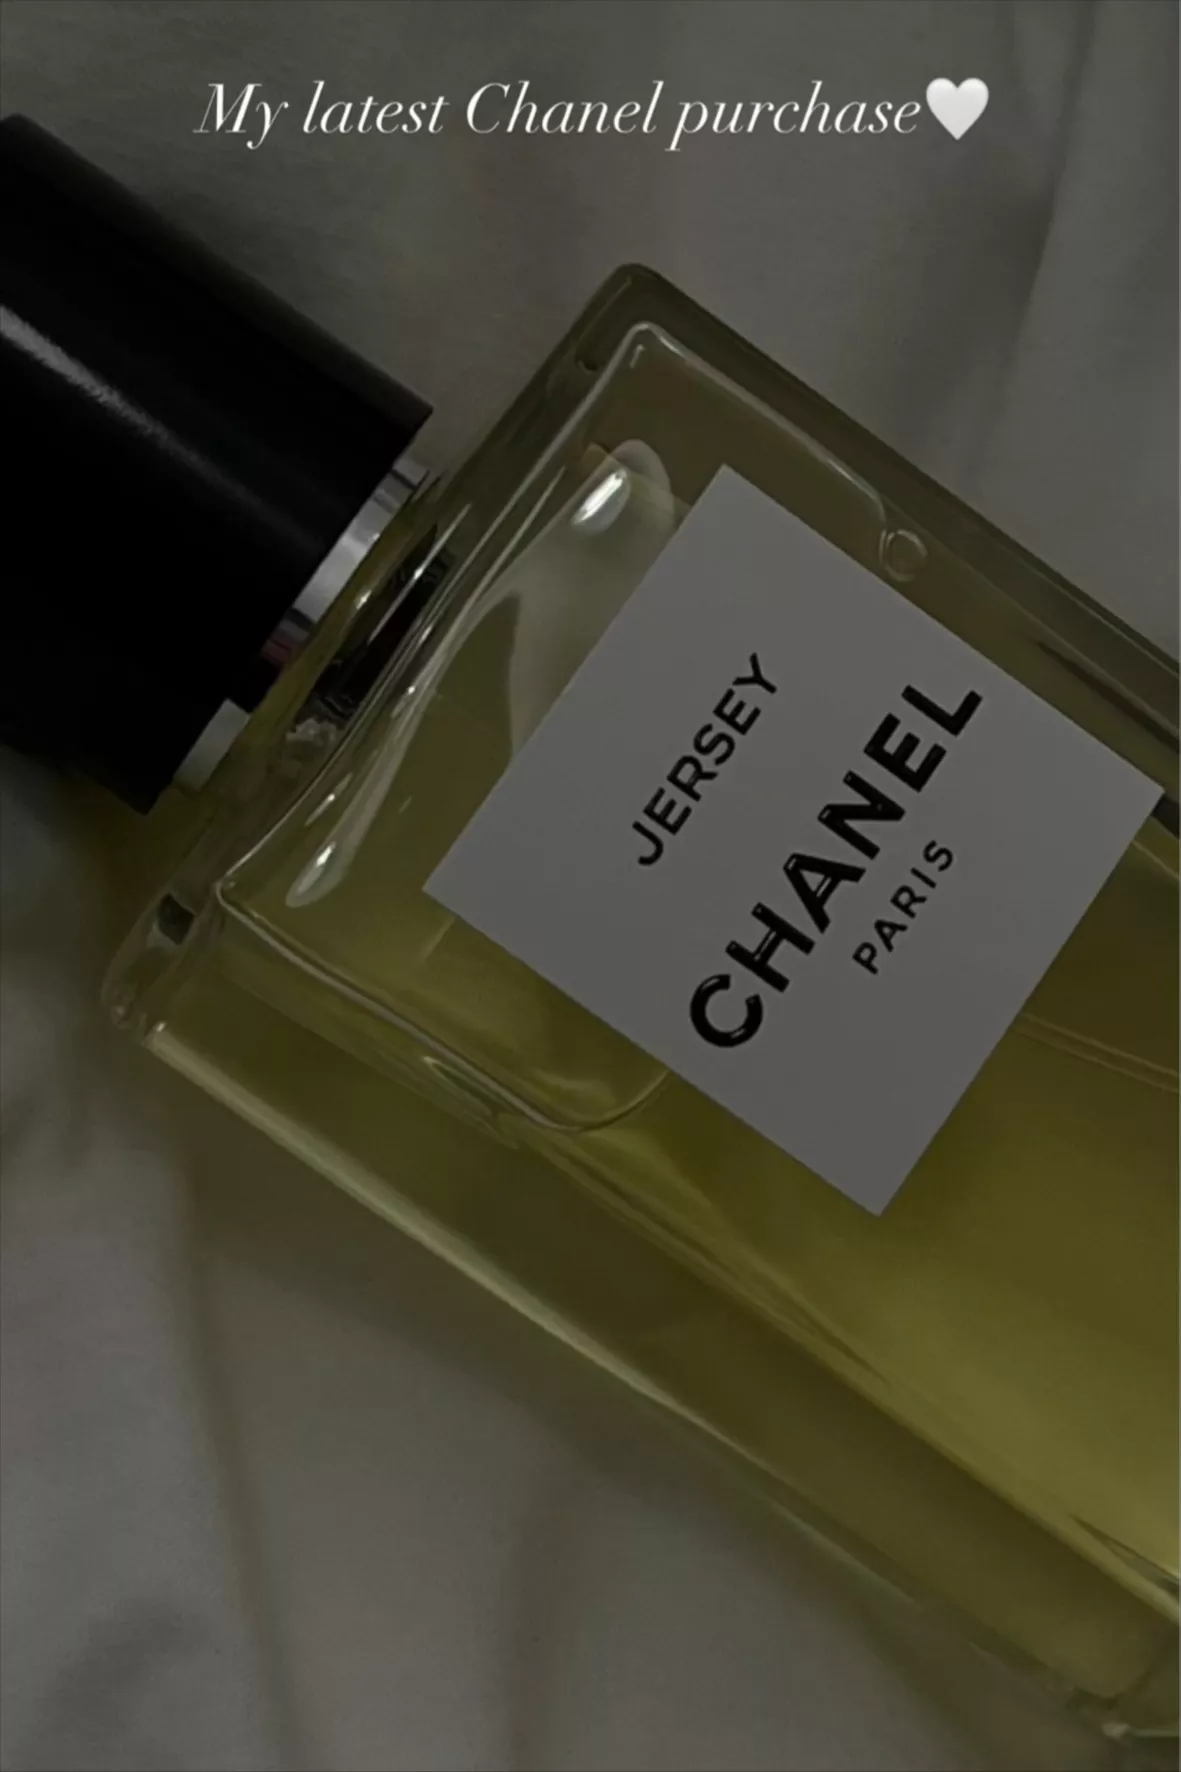 Size: 1.7 oz / 50 ml eau de parfum … curated on LTK